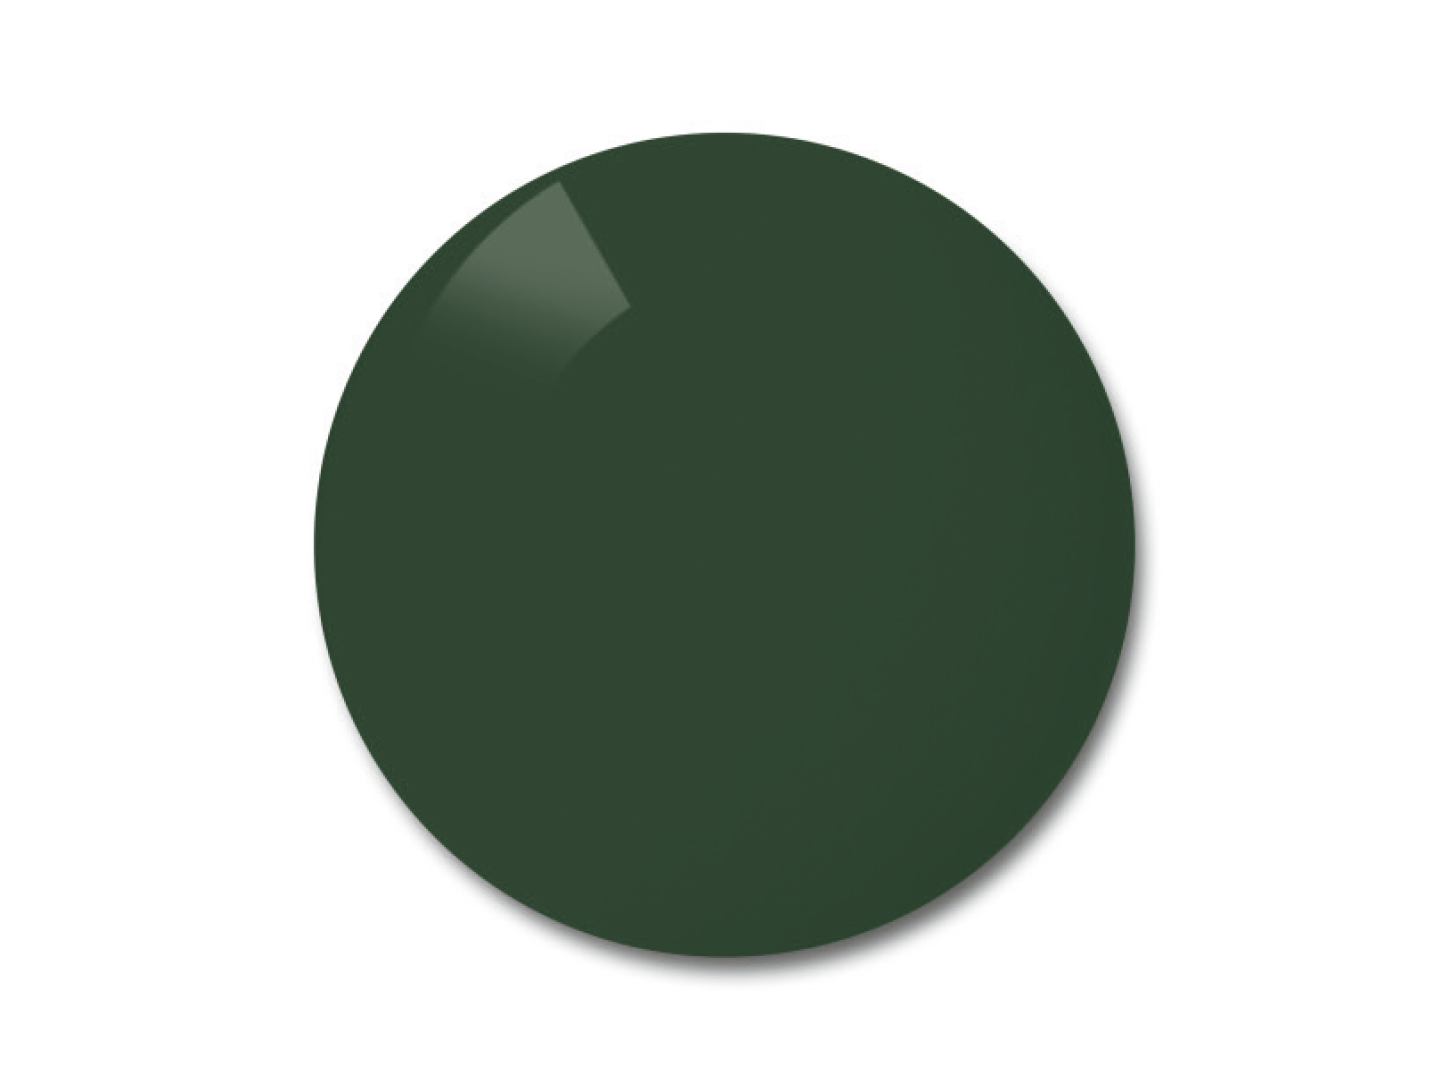 Färgexempel för de grå-gröna (pineer) polariserande glasen.